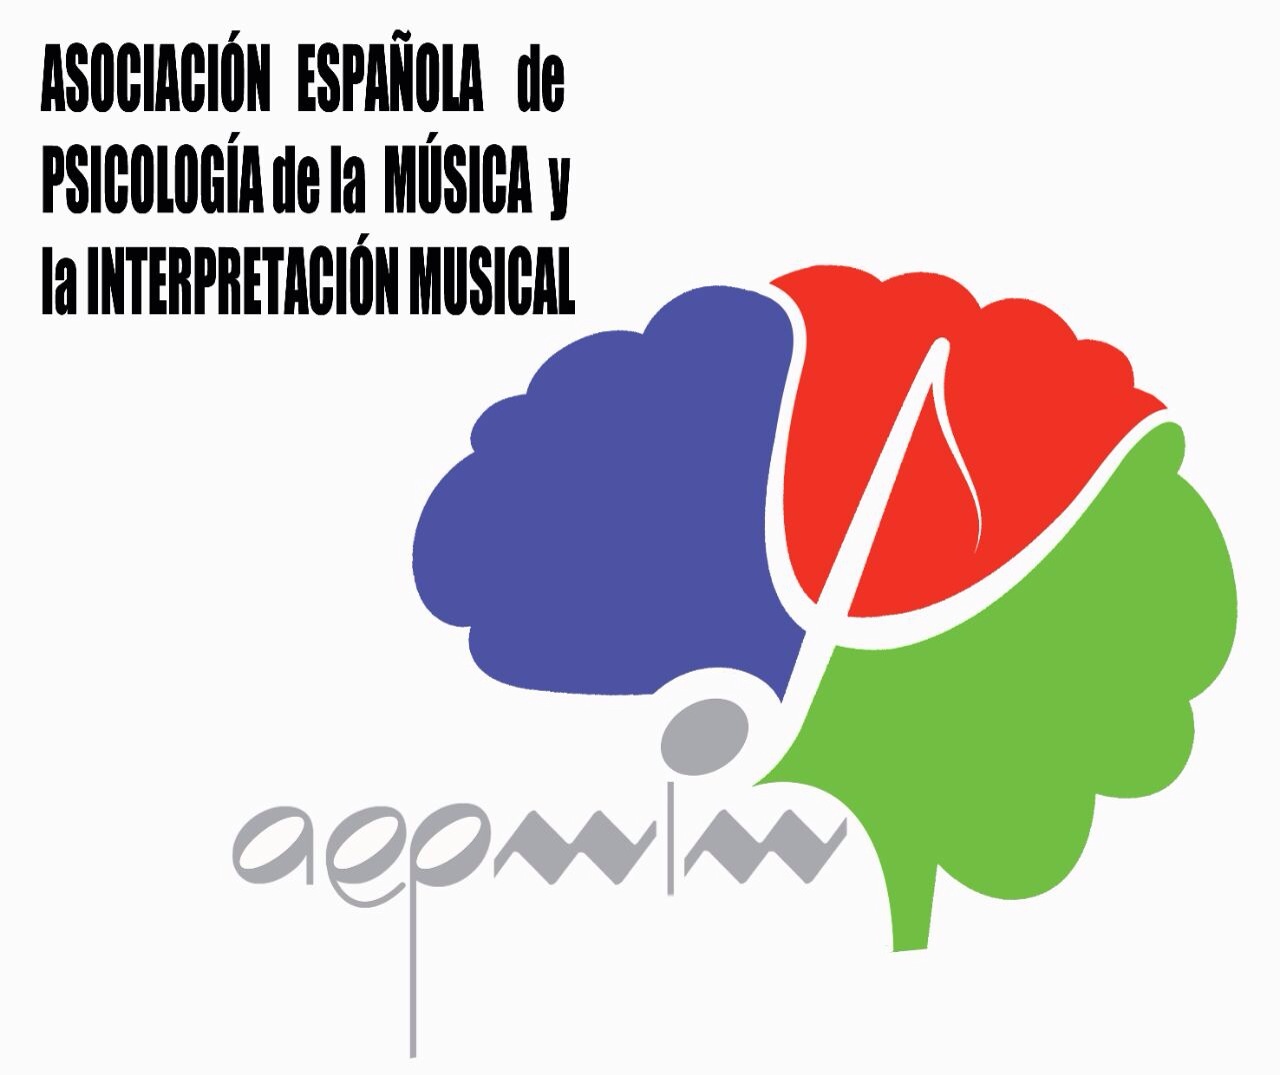 musica, psicologia, asociacion. asociacion psicologia, asociacion interpretacion musica. aepmim, Asociación Española de Psicología de la Música y la Interpretación Musical